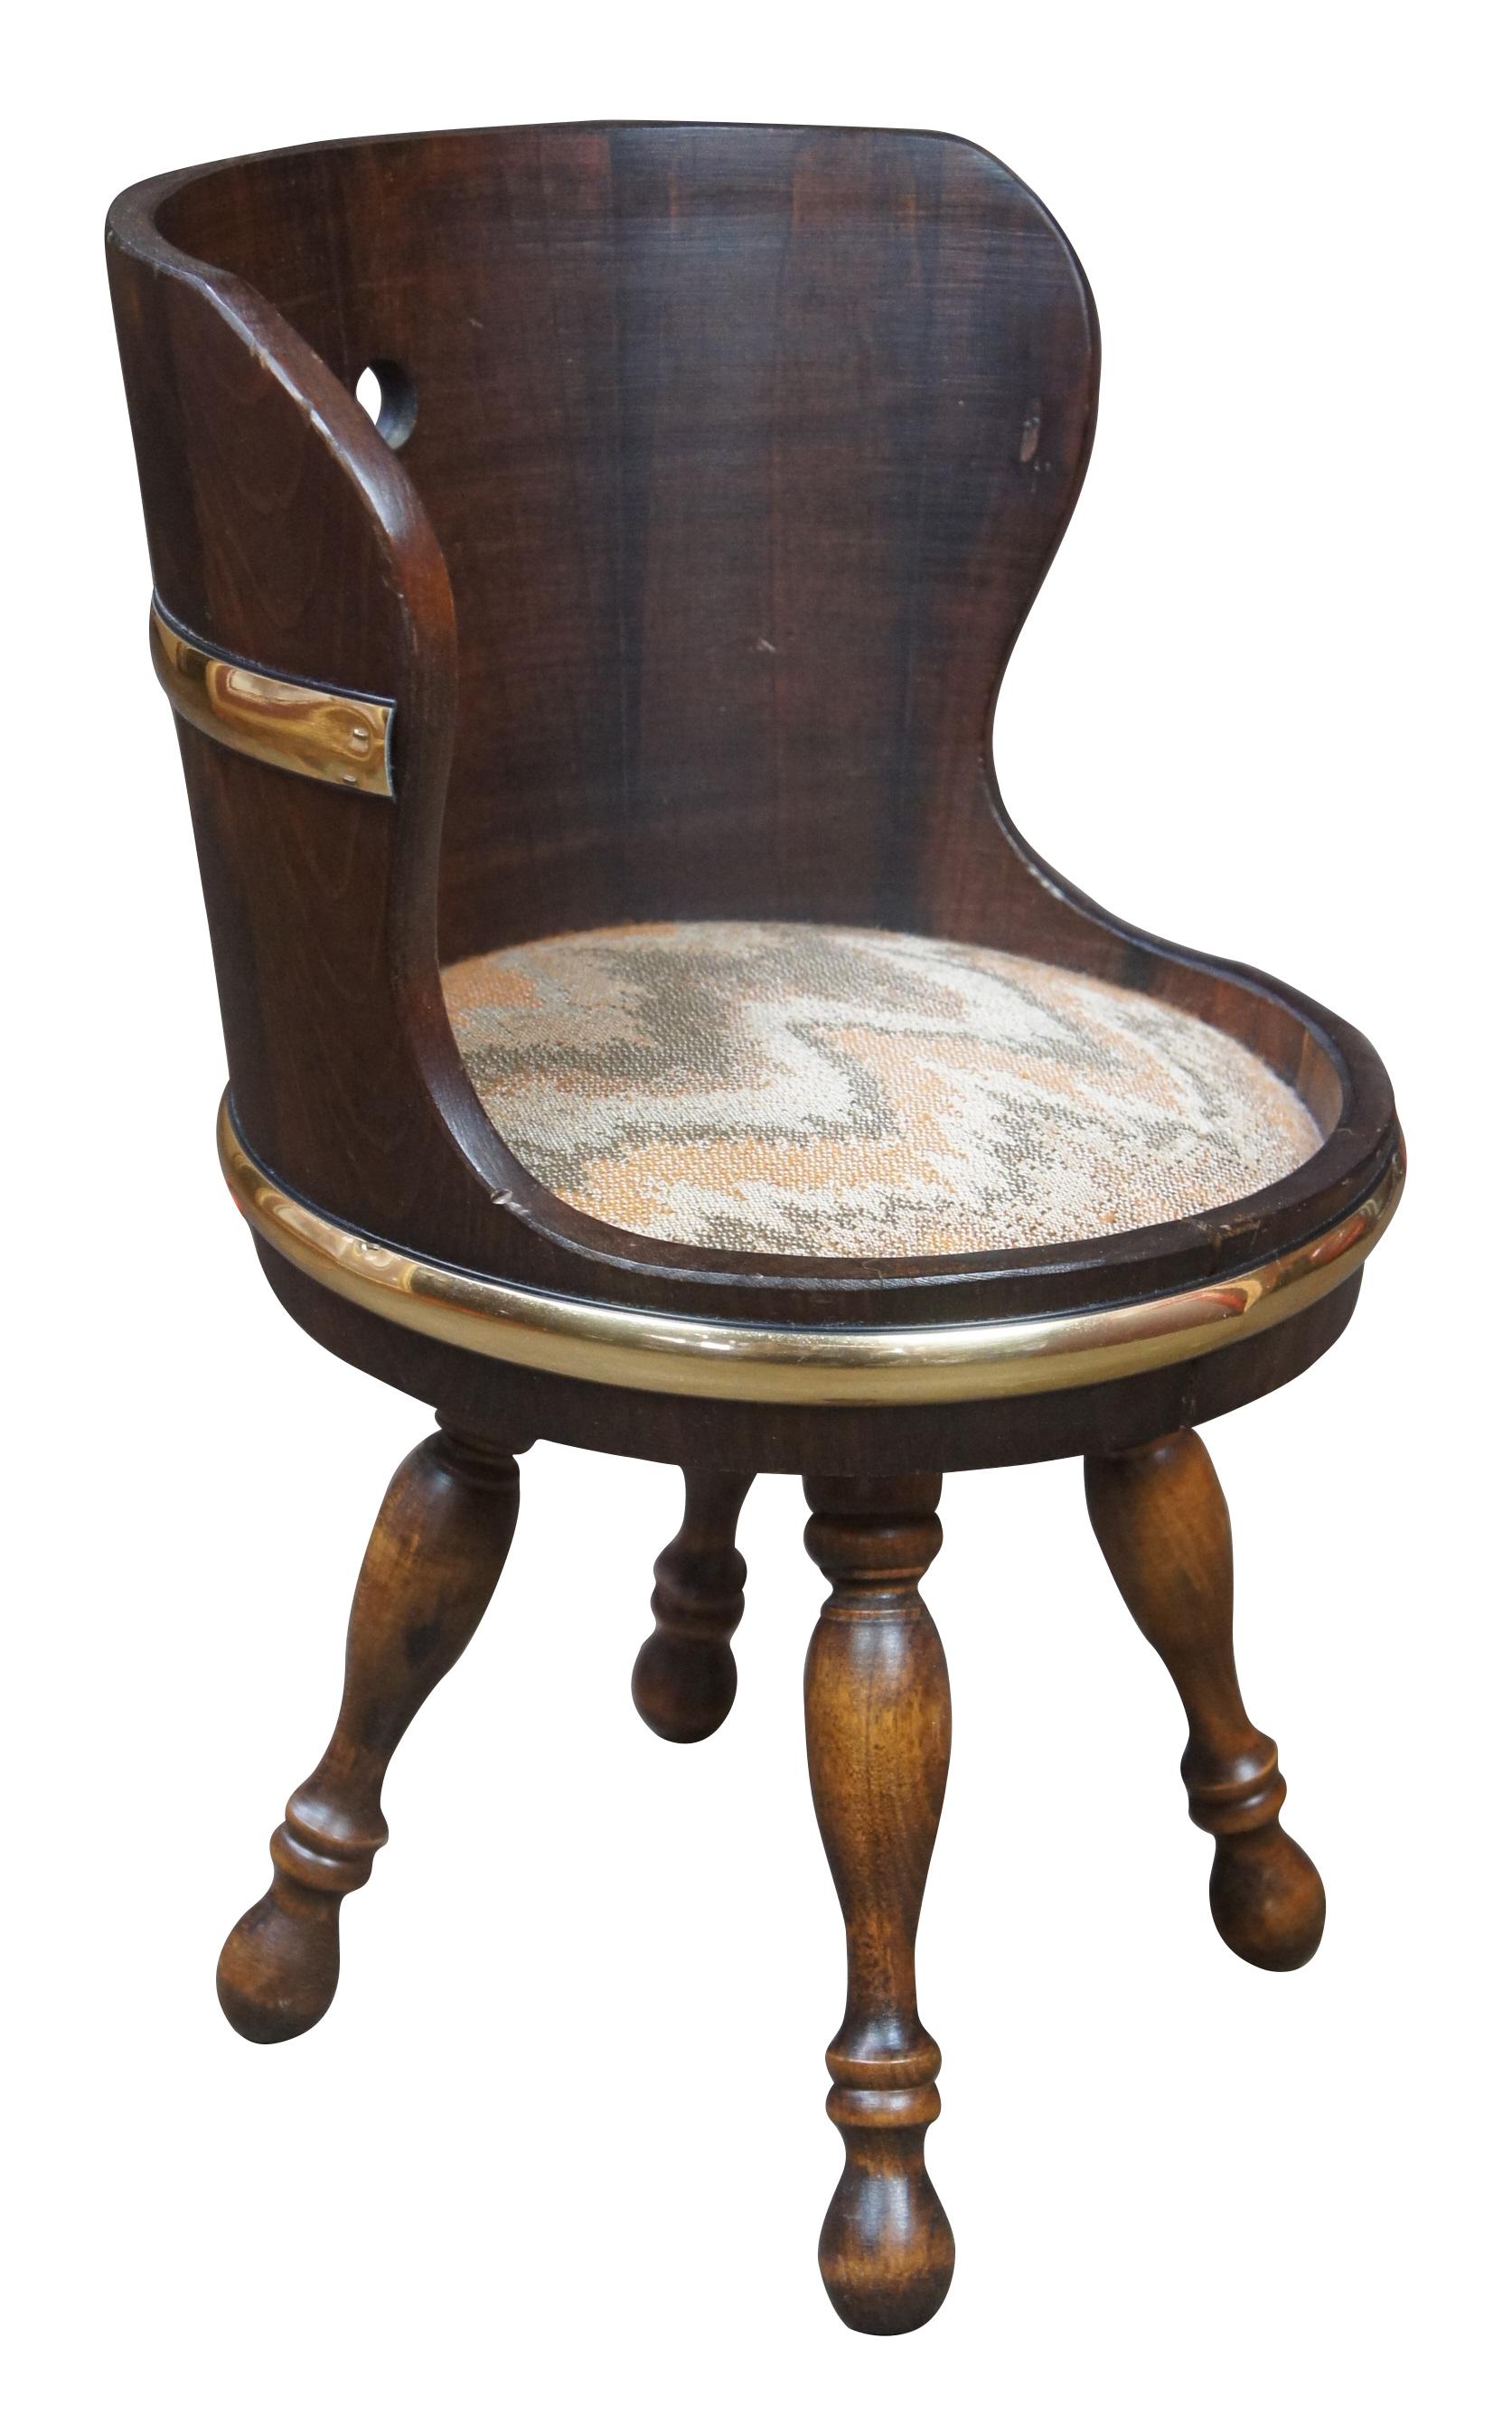 Dieser kleine Stuhl oder Hocker ist aus Hickoryholz mit Messingakzenten im Fass-Stil gefertigt und mit einer neutralen Polsterung versehen. Maße: 18